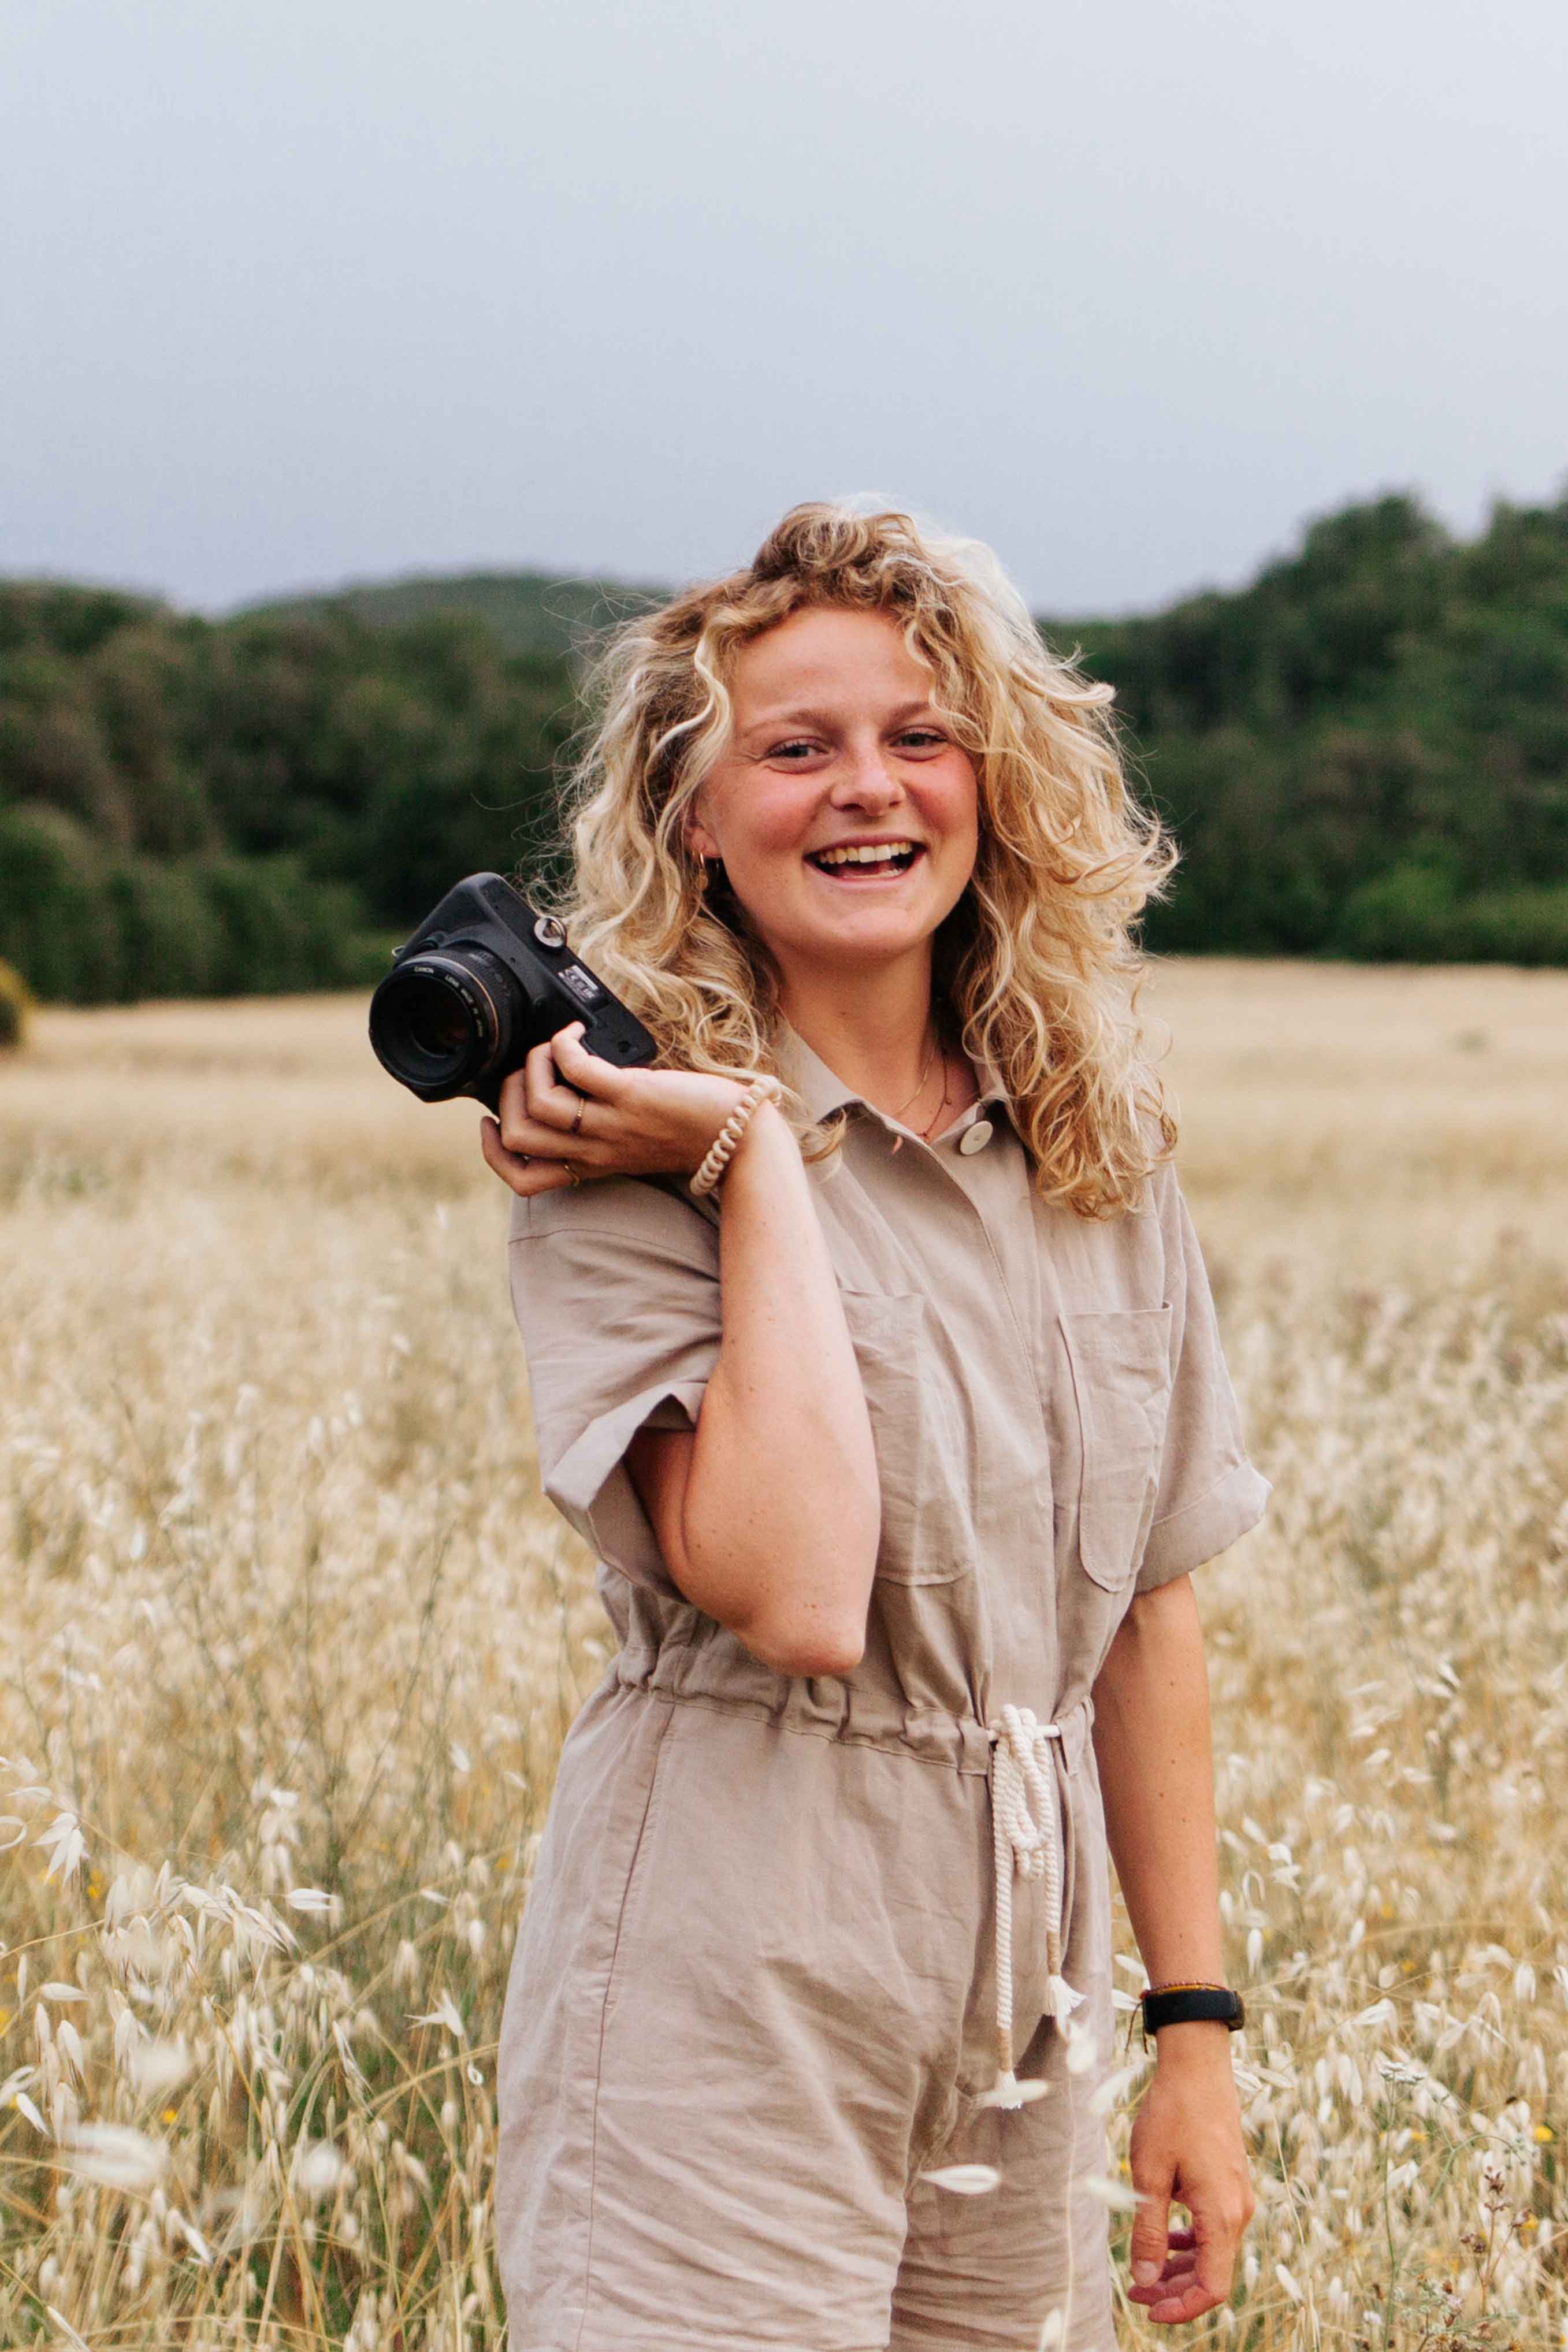 De fotografe van Yara Photography staat in een weiland, waar droog gras te zien is in de achtergrond. Zij poseert voor de camera, met een camera in haar hand en lacht breed. Ze draagt een beige jumpsuit en haar blonde krullen hangen los langs haar hoofd.